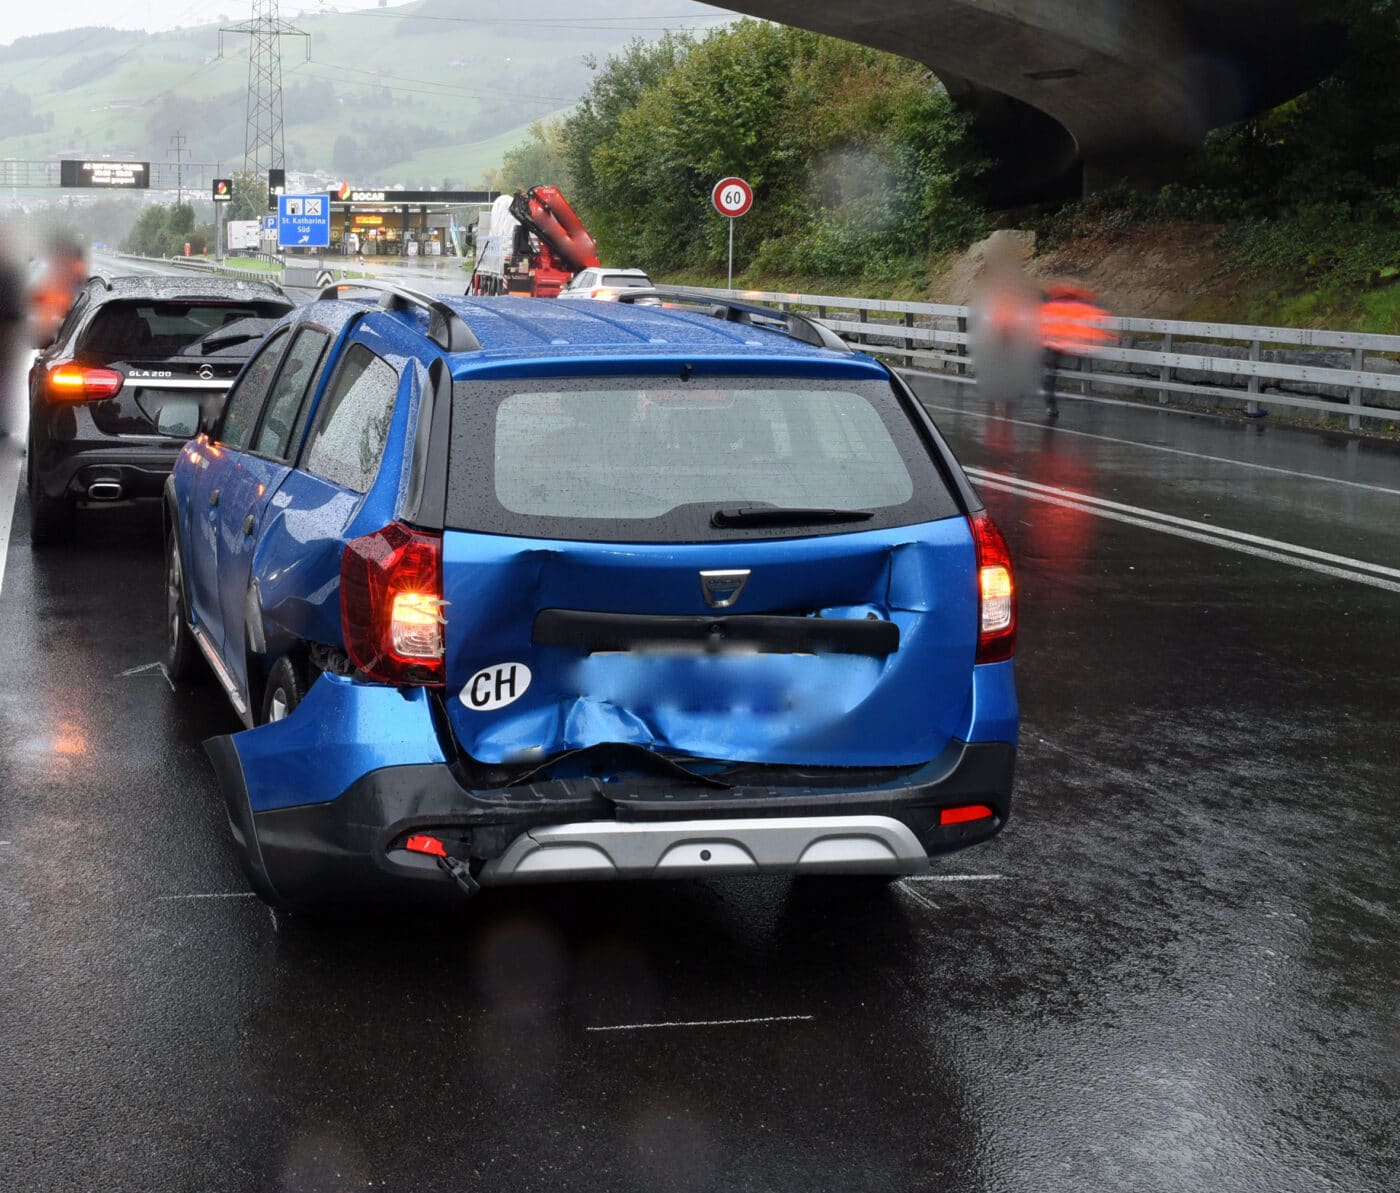 Kollision zwischen mehreren Fahrzeugen – eine Person leicht verletzt